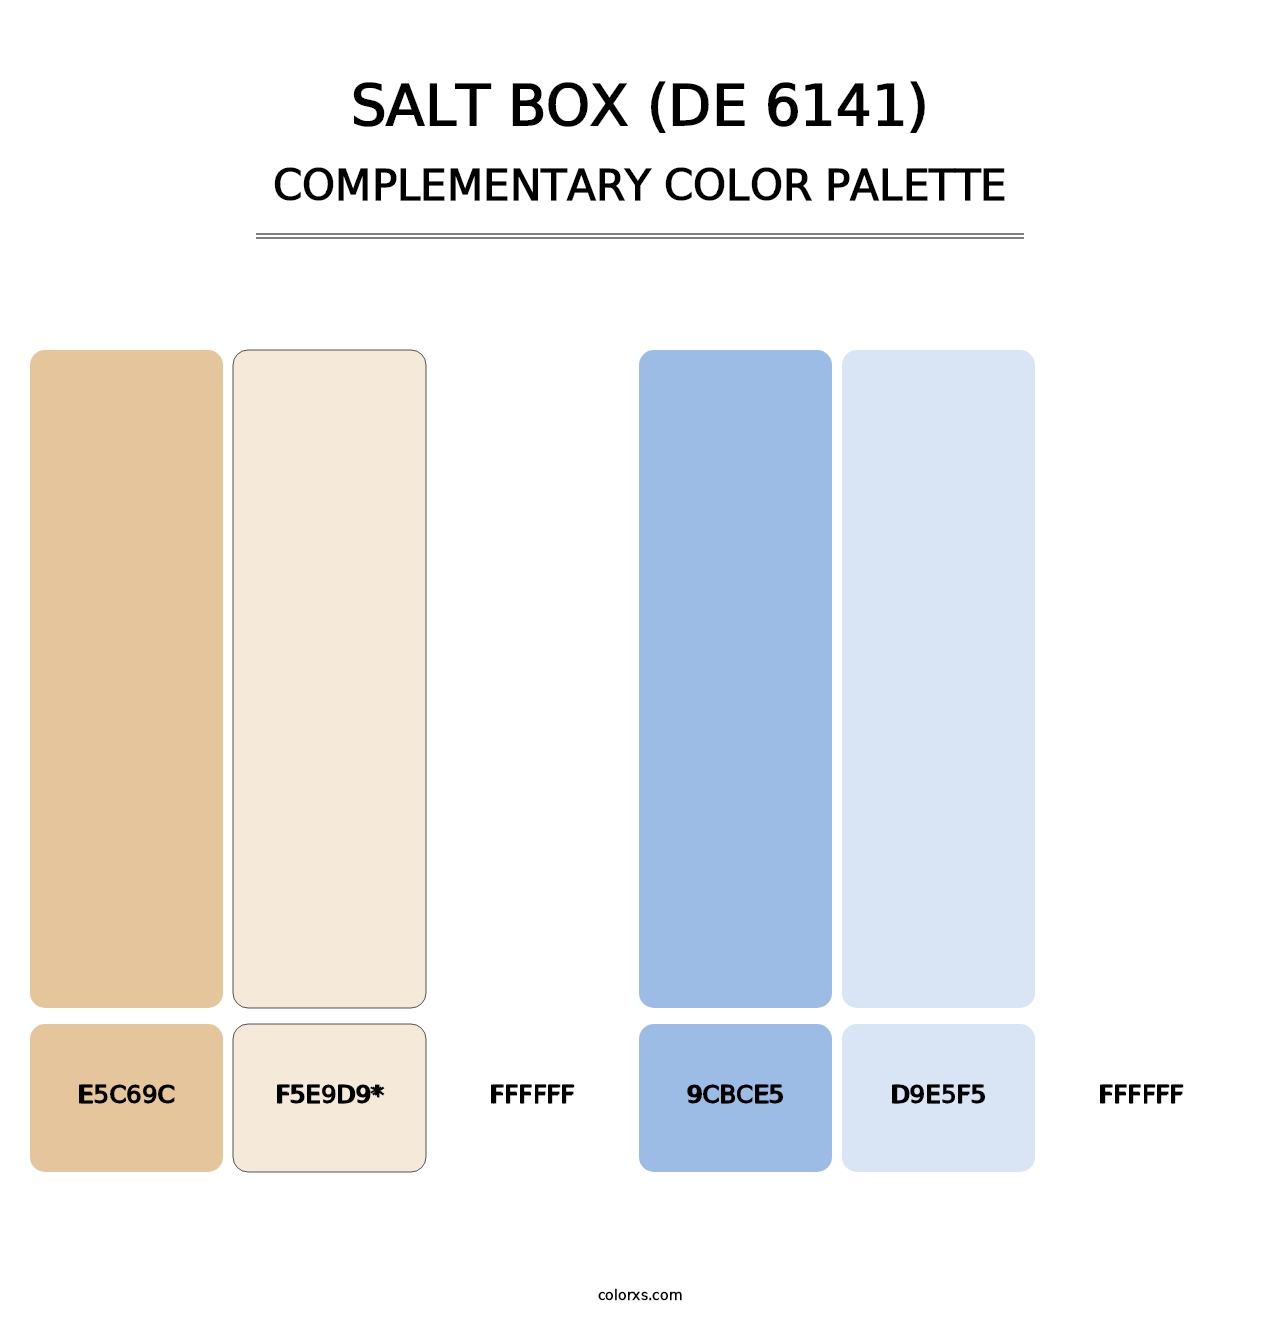 Salt Box (DE 6141) - Complementary Color Palette